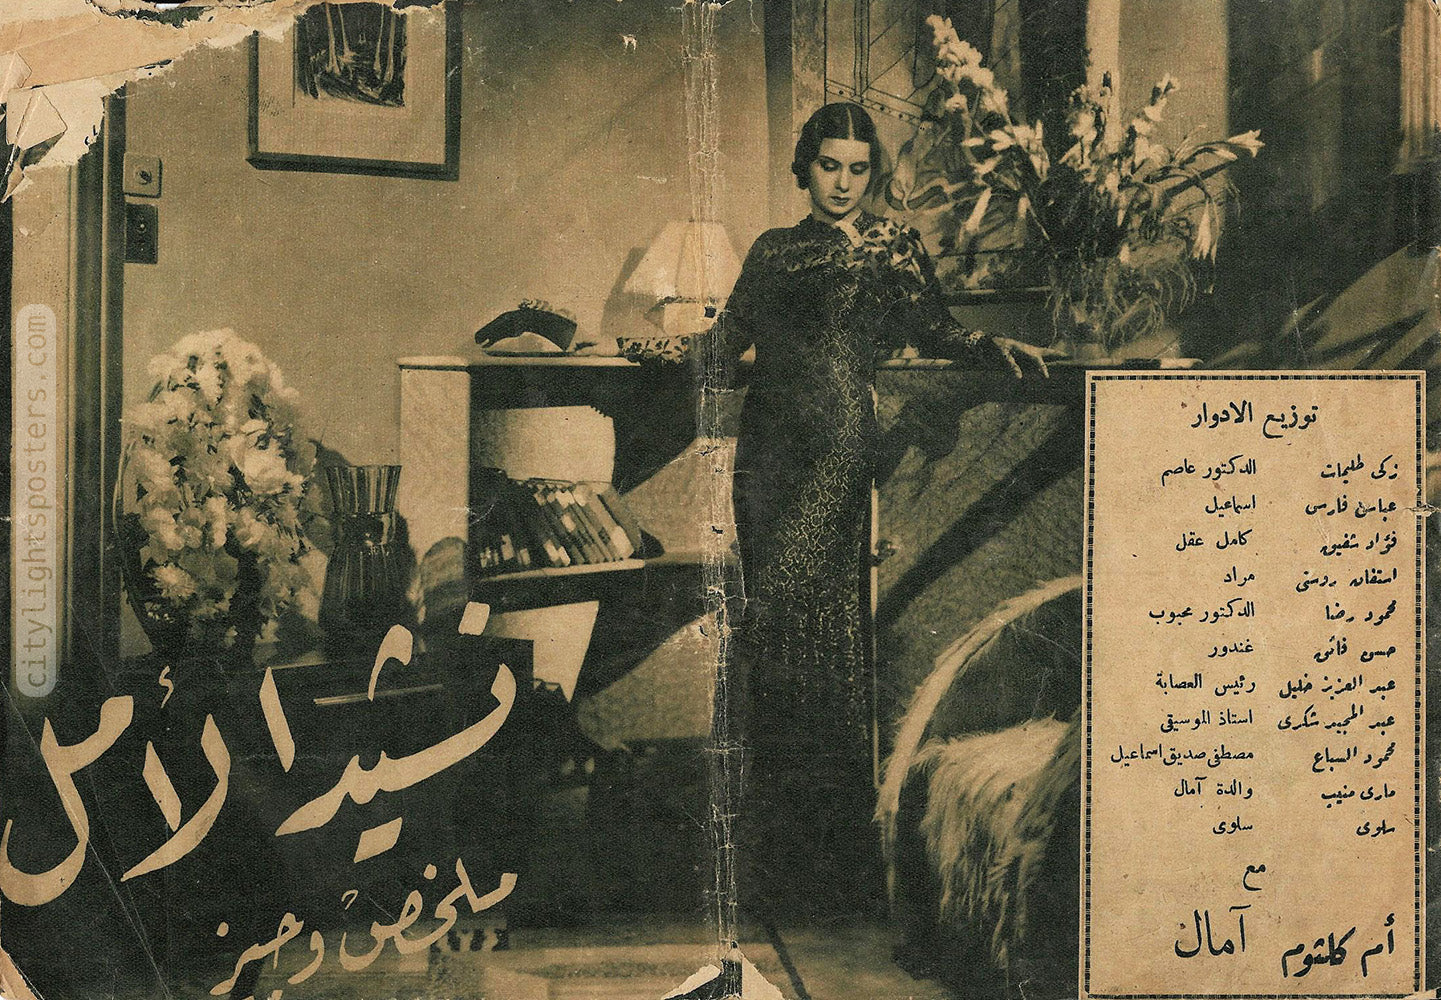 أم كلثوم الشابة على غلاف كتيِّب فيلم «نشيد الأمل» (1937)